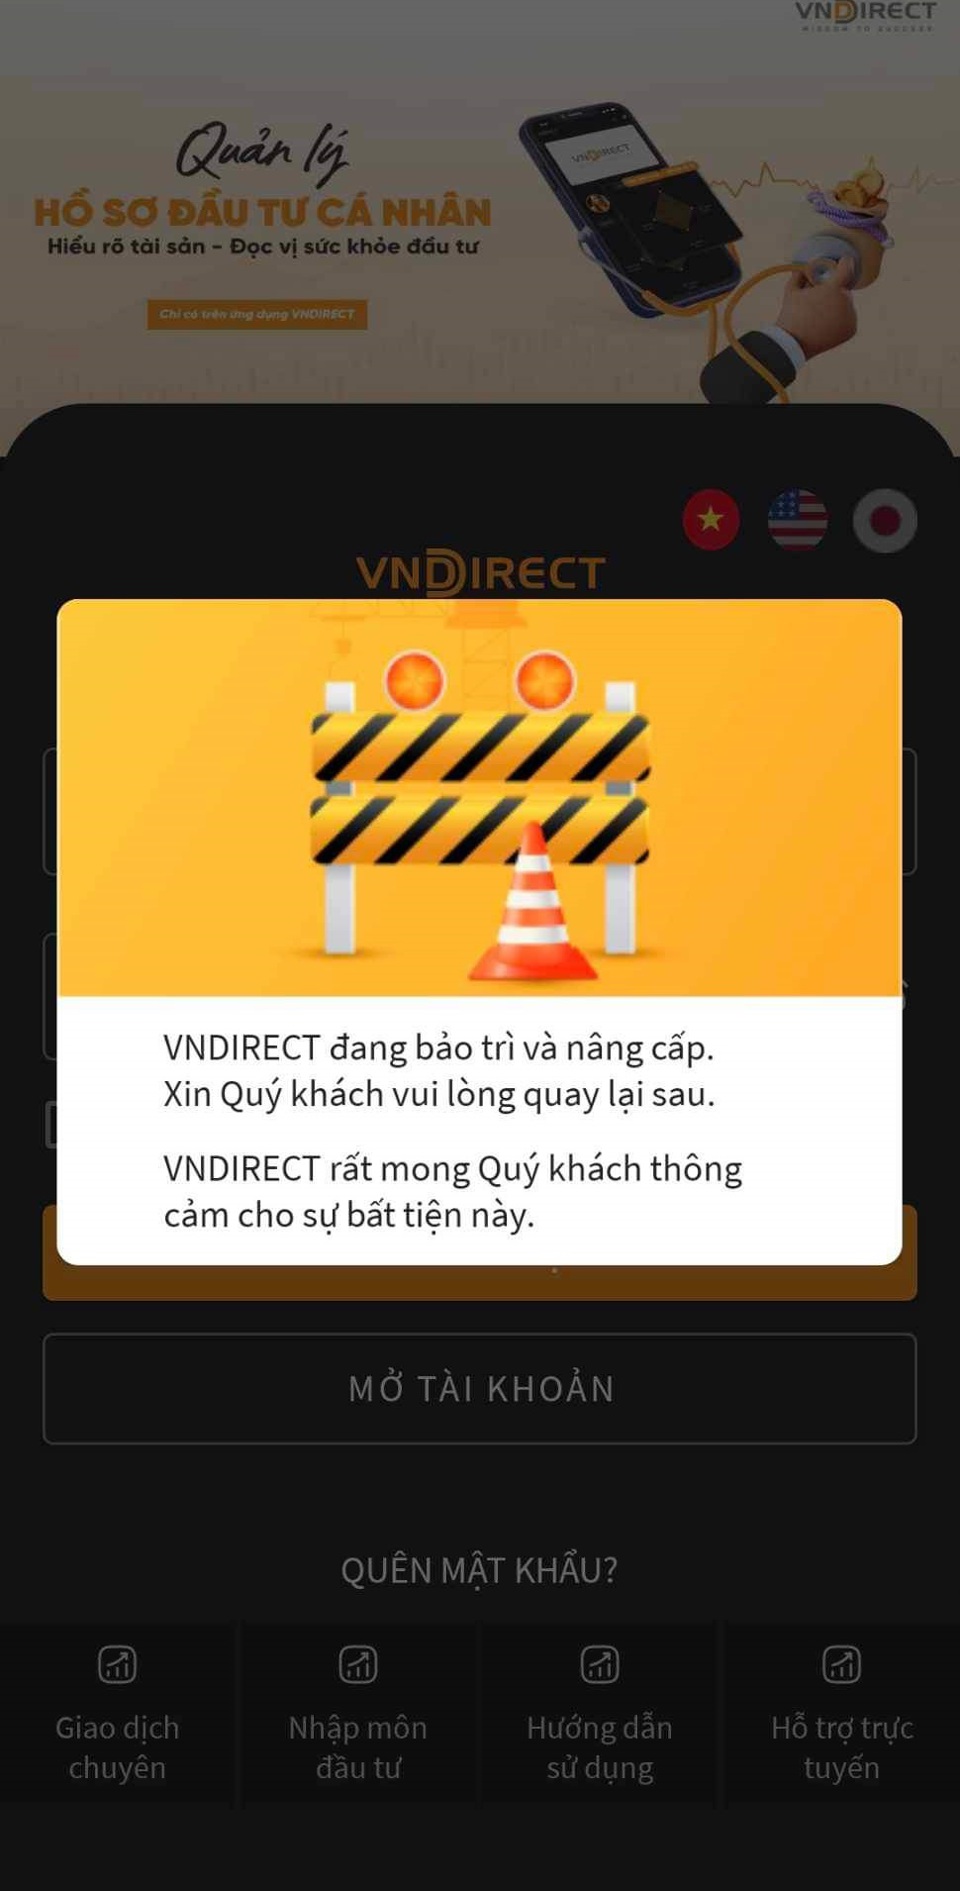 App của VNDIRECT hiện cũng đang ngừng hoạt động.